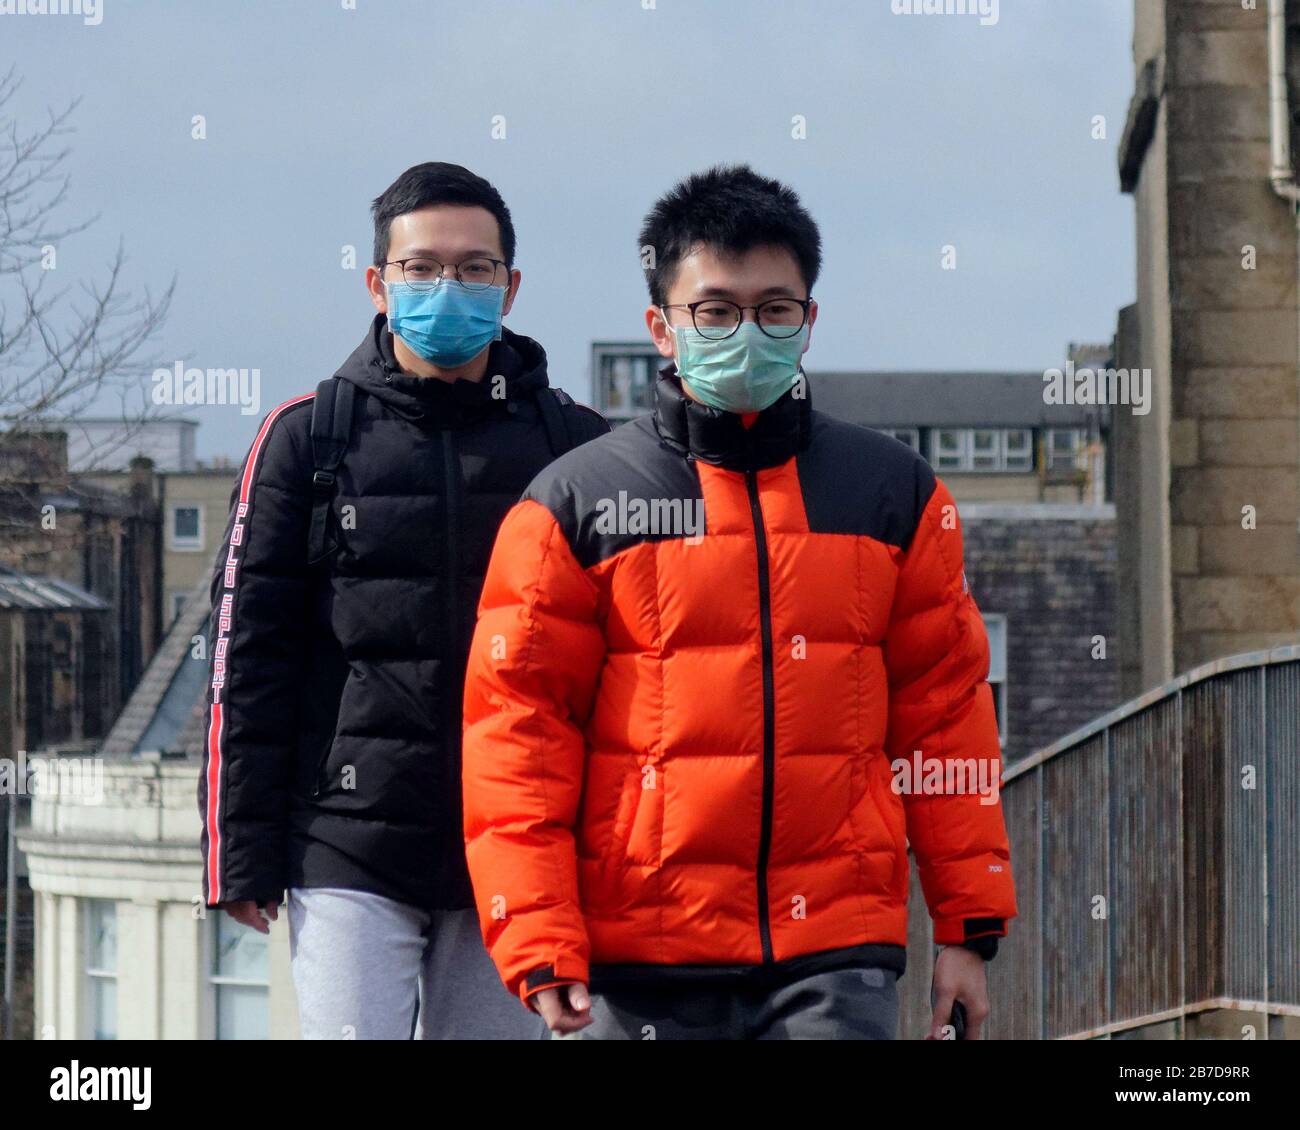 Glasgow, Schottland, Großbritannien, 15. März 2020: Mehr Masken, die jeden Tag erscheinen, wenn sich Sorgen über die Schrecken von Coronavirus erhöhen. Gerard Ferry/Alamy Live News Stockfoto